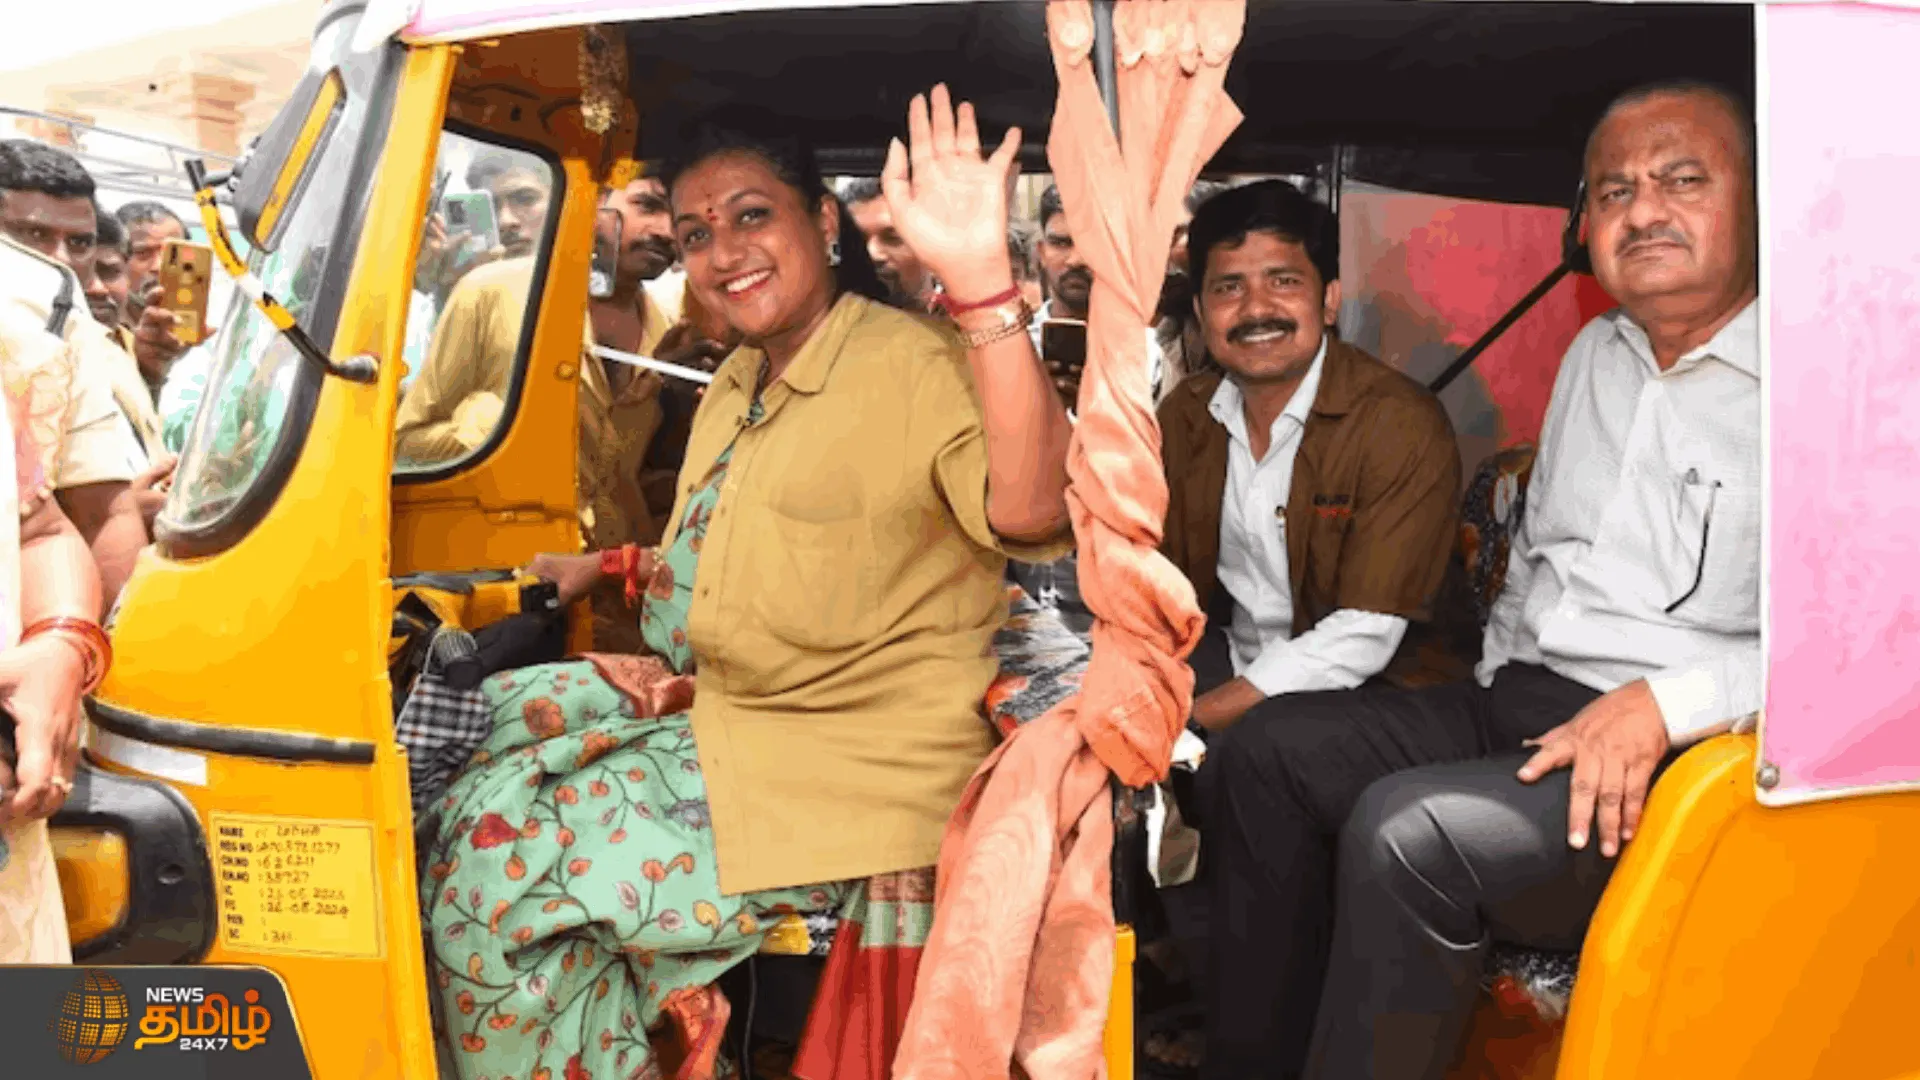  ஆட்டோ ஓட்டி அசத்திய ஆந்திர அமைச்சர் ரோஜா  ஆட்டோ, டாக்ஸி டிரைவர்களுக்கு நிதி உதவியும் வழங்கினார் | Andhra Minister Roja